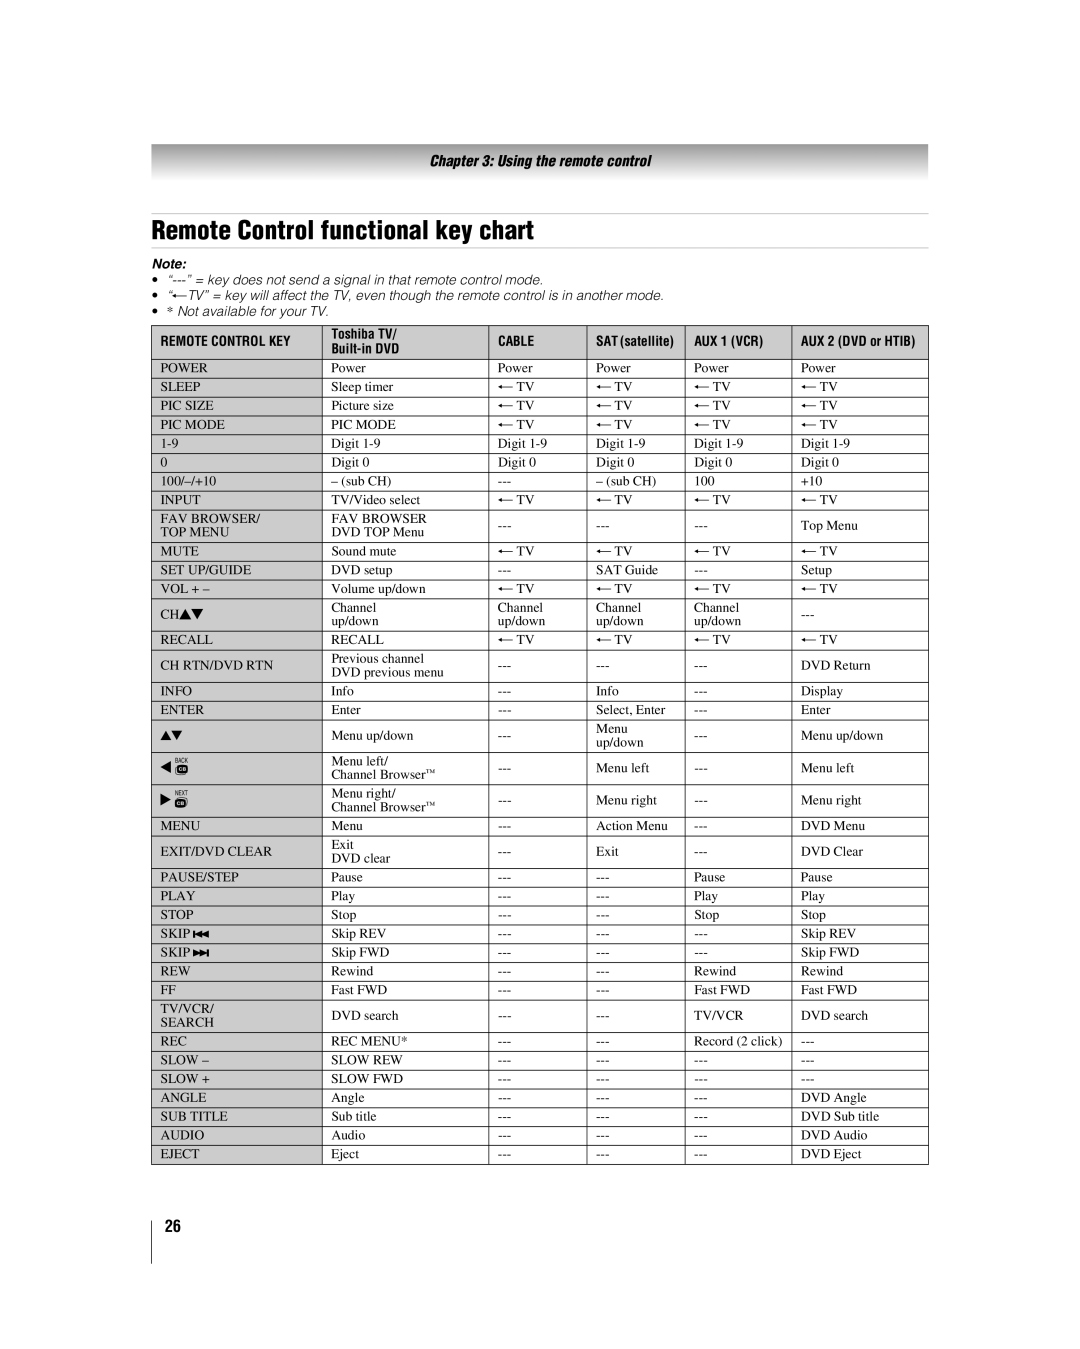 Toshiba 32LV17U, 32LV37U manual Remote Control functional key chart, Using the remote control 